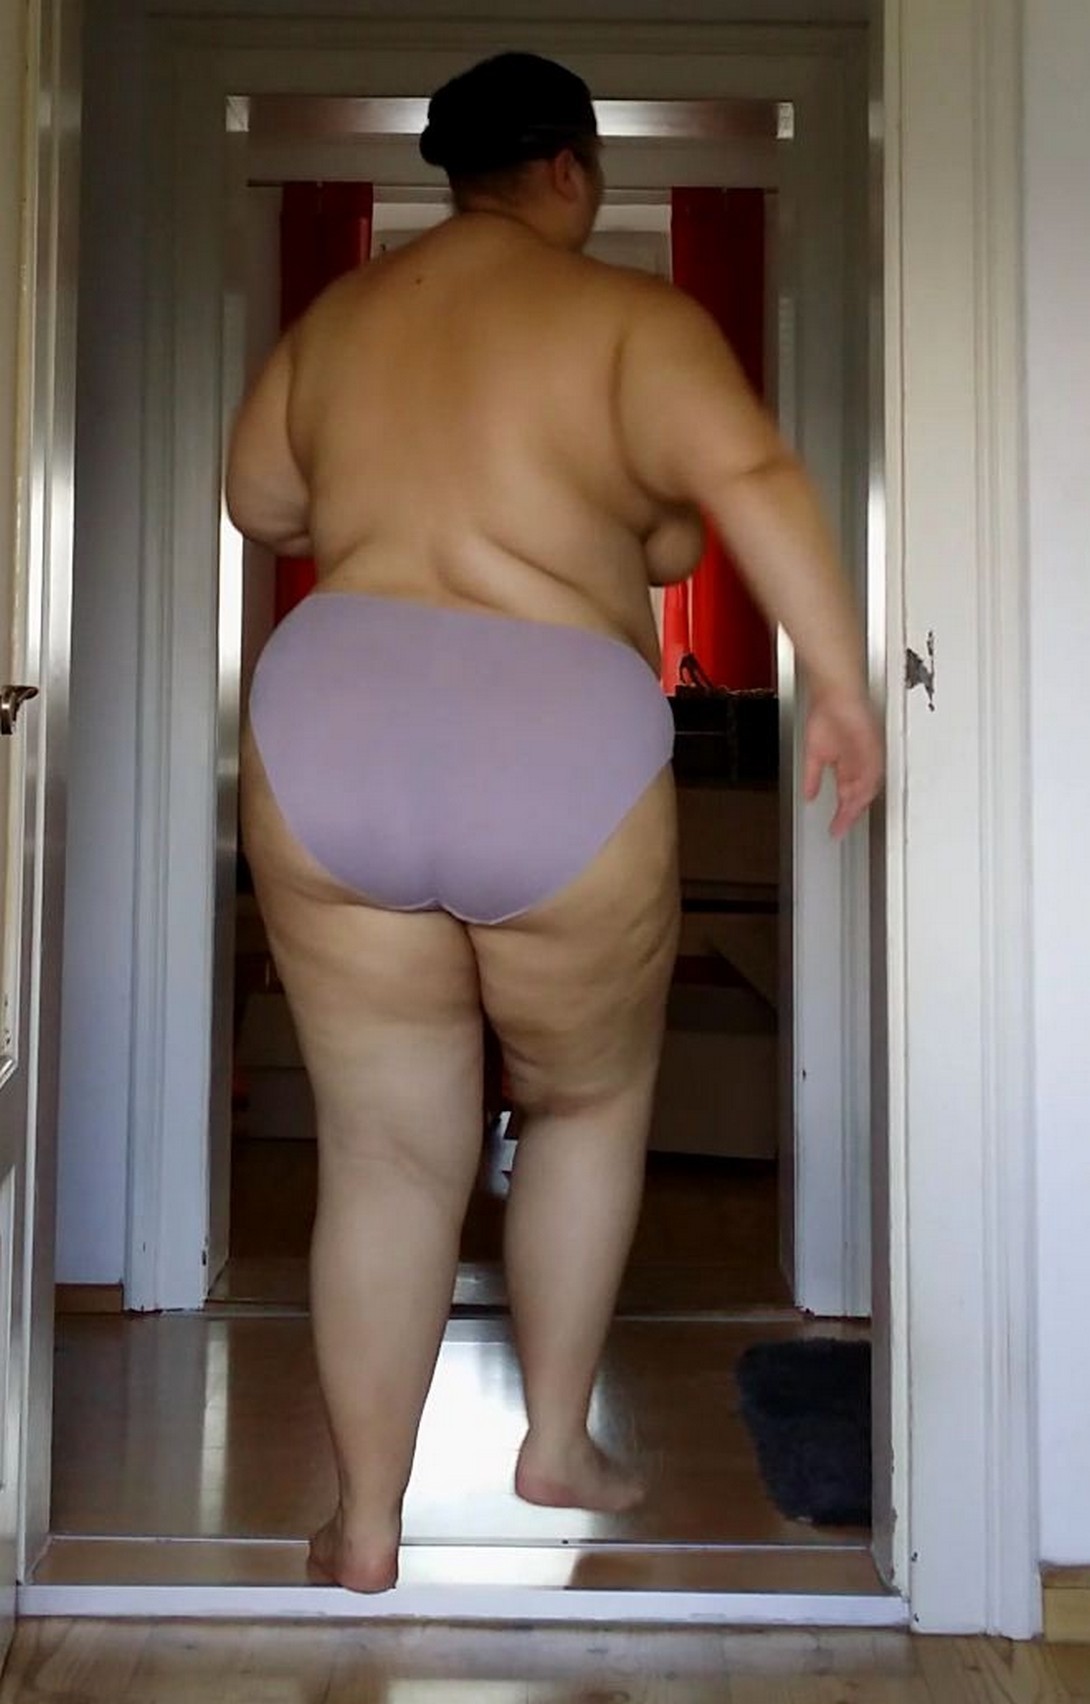 Free porn pics of Dumb Fat Pig Slut Wife Exposed 11 of 11 pics